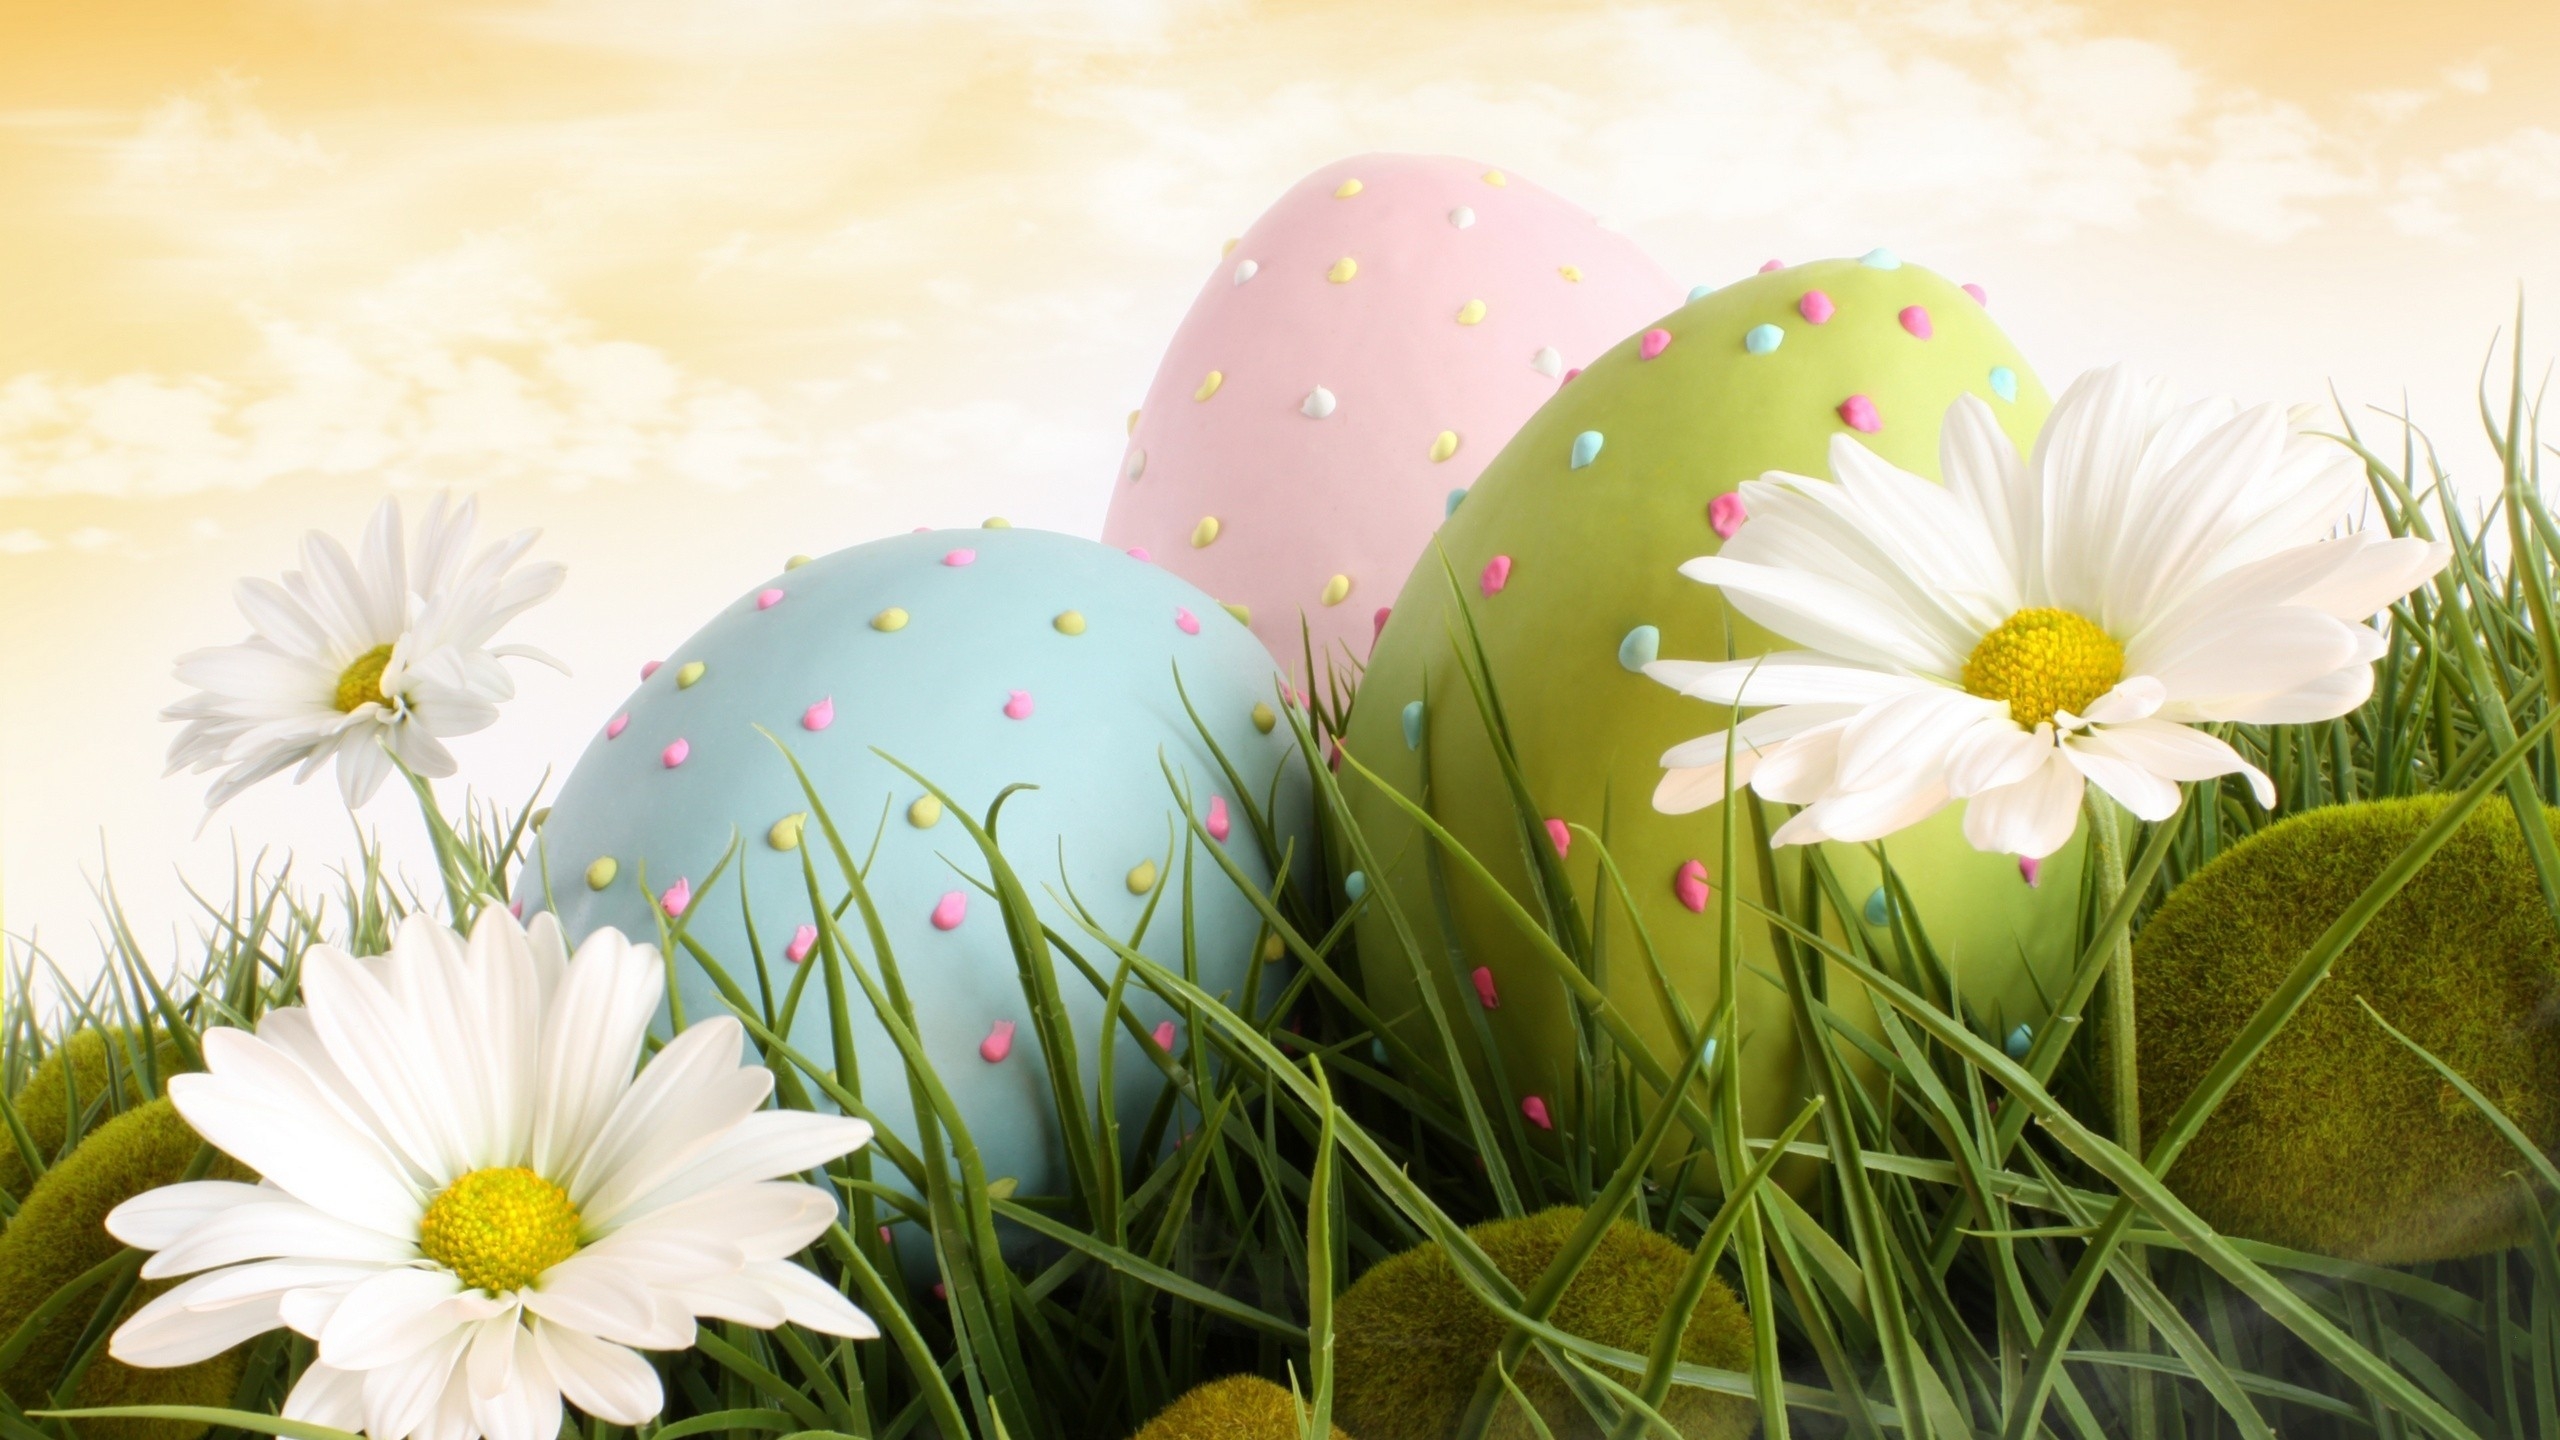 3 Easter Eggs for 2560x1440 HDTV resolution